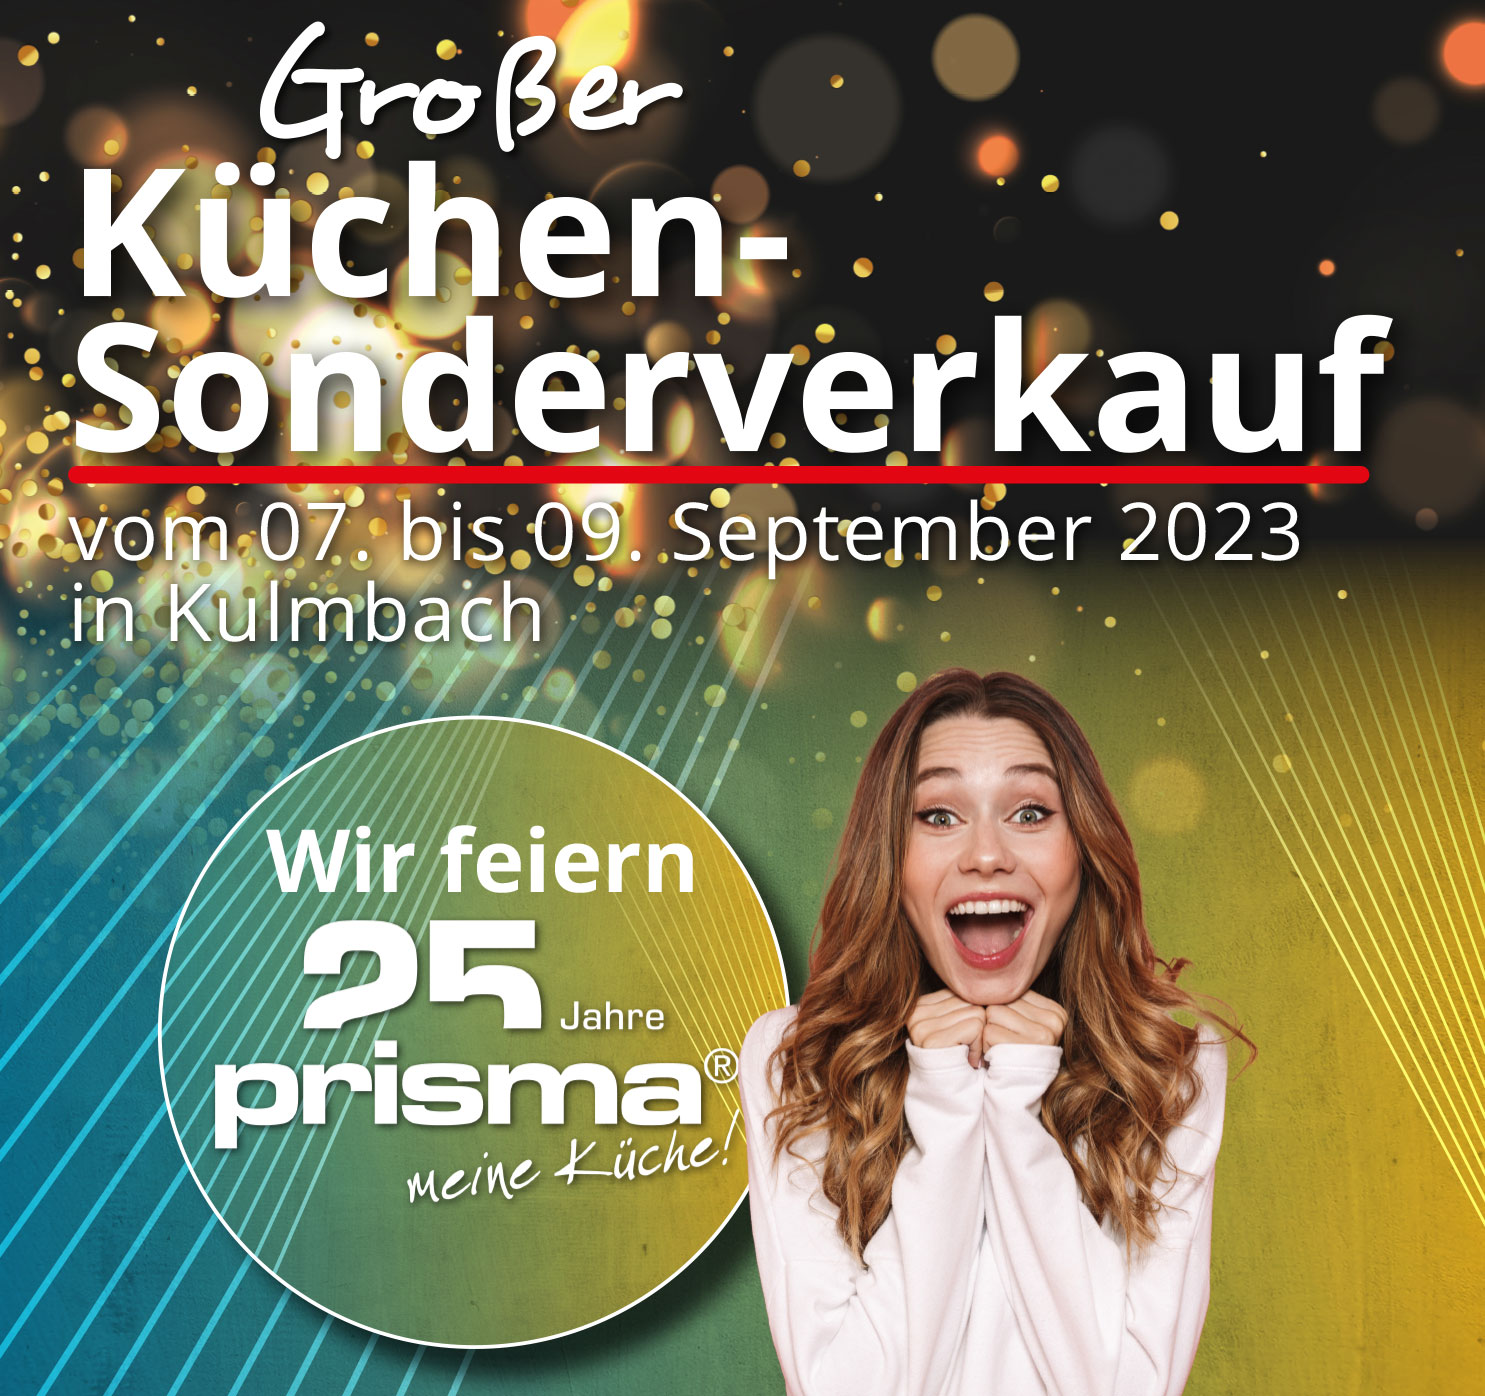 Jetzt kräftig sparen beim großen Küchen-Sonderverkauf beim Mega Küchencenter in Kulmbach. Nur vom 07. - 09. September!